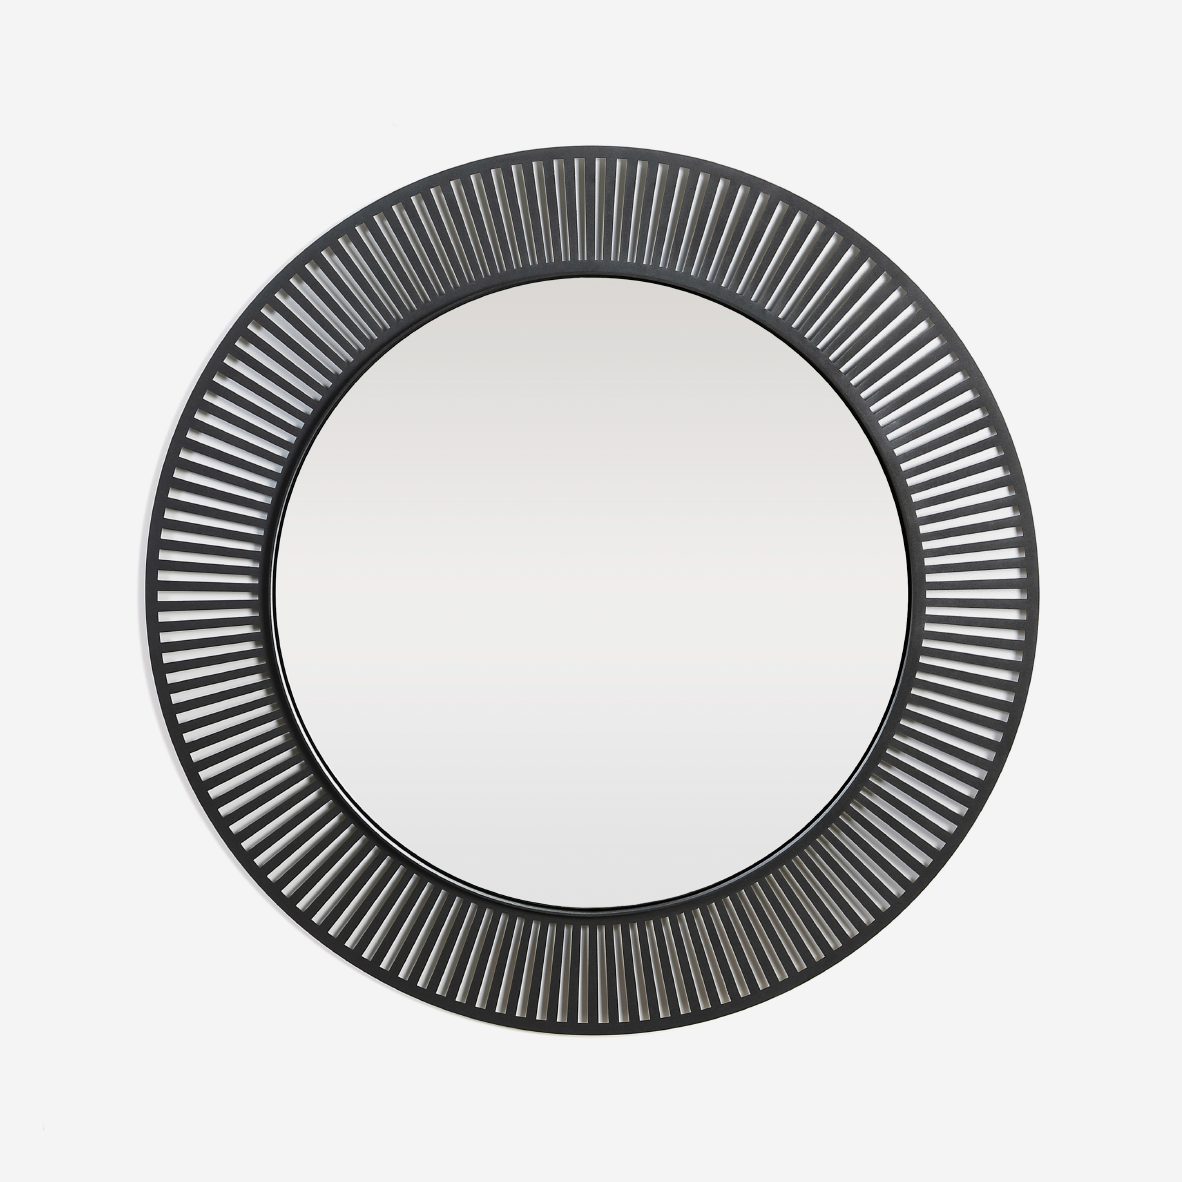 Spindle Round Mirror - Black